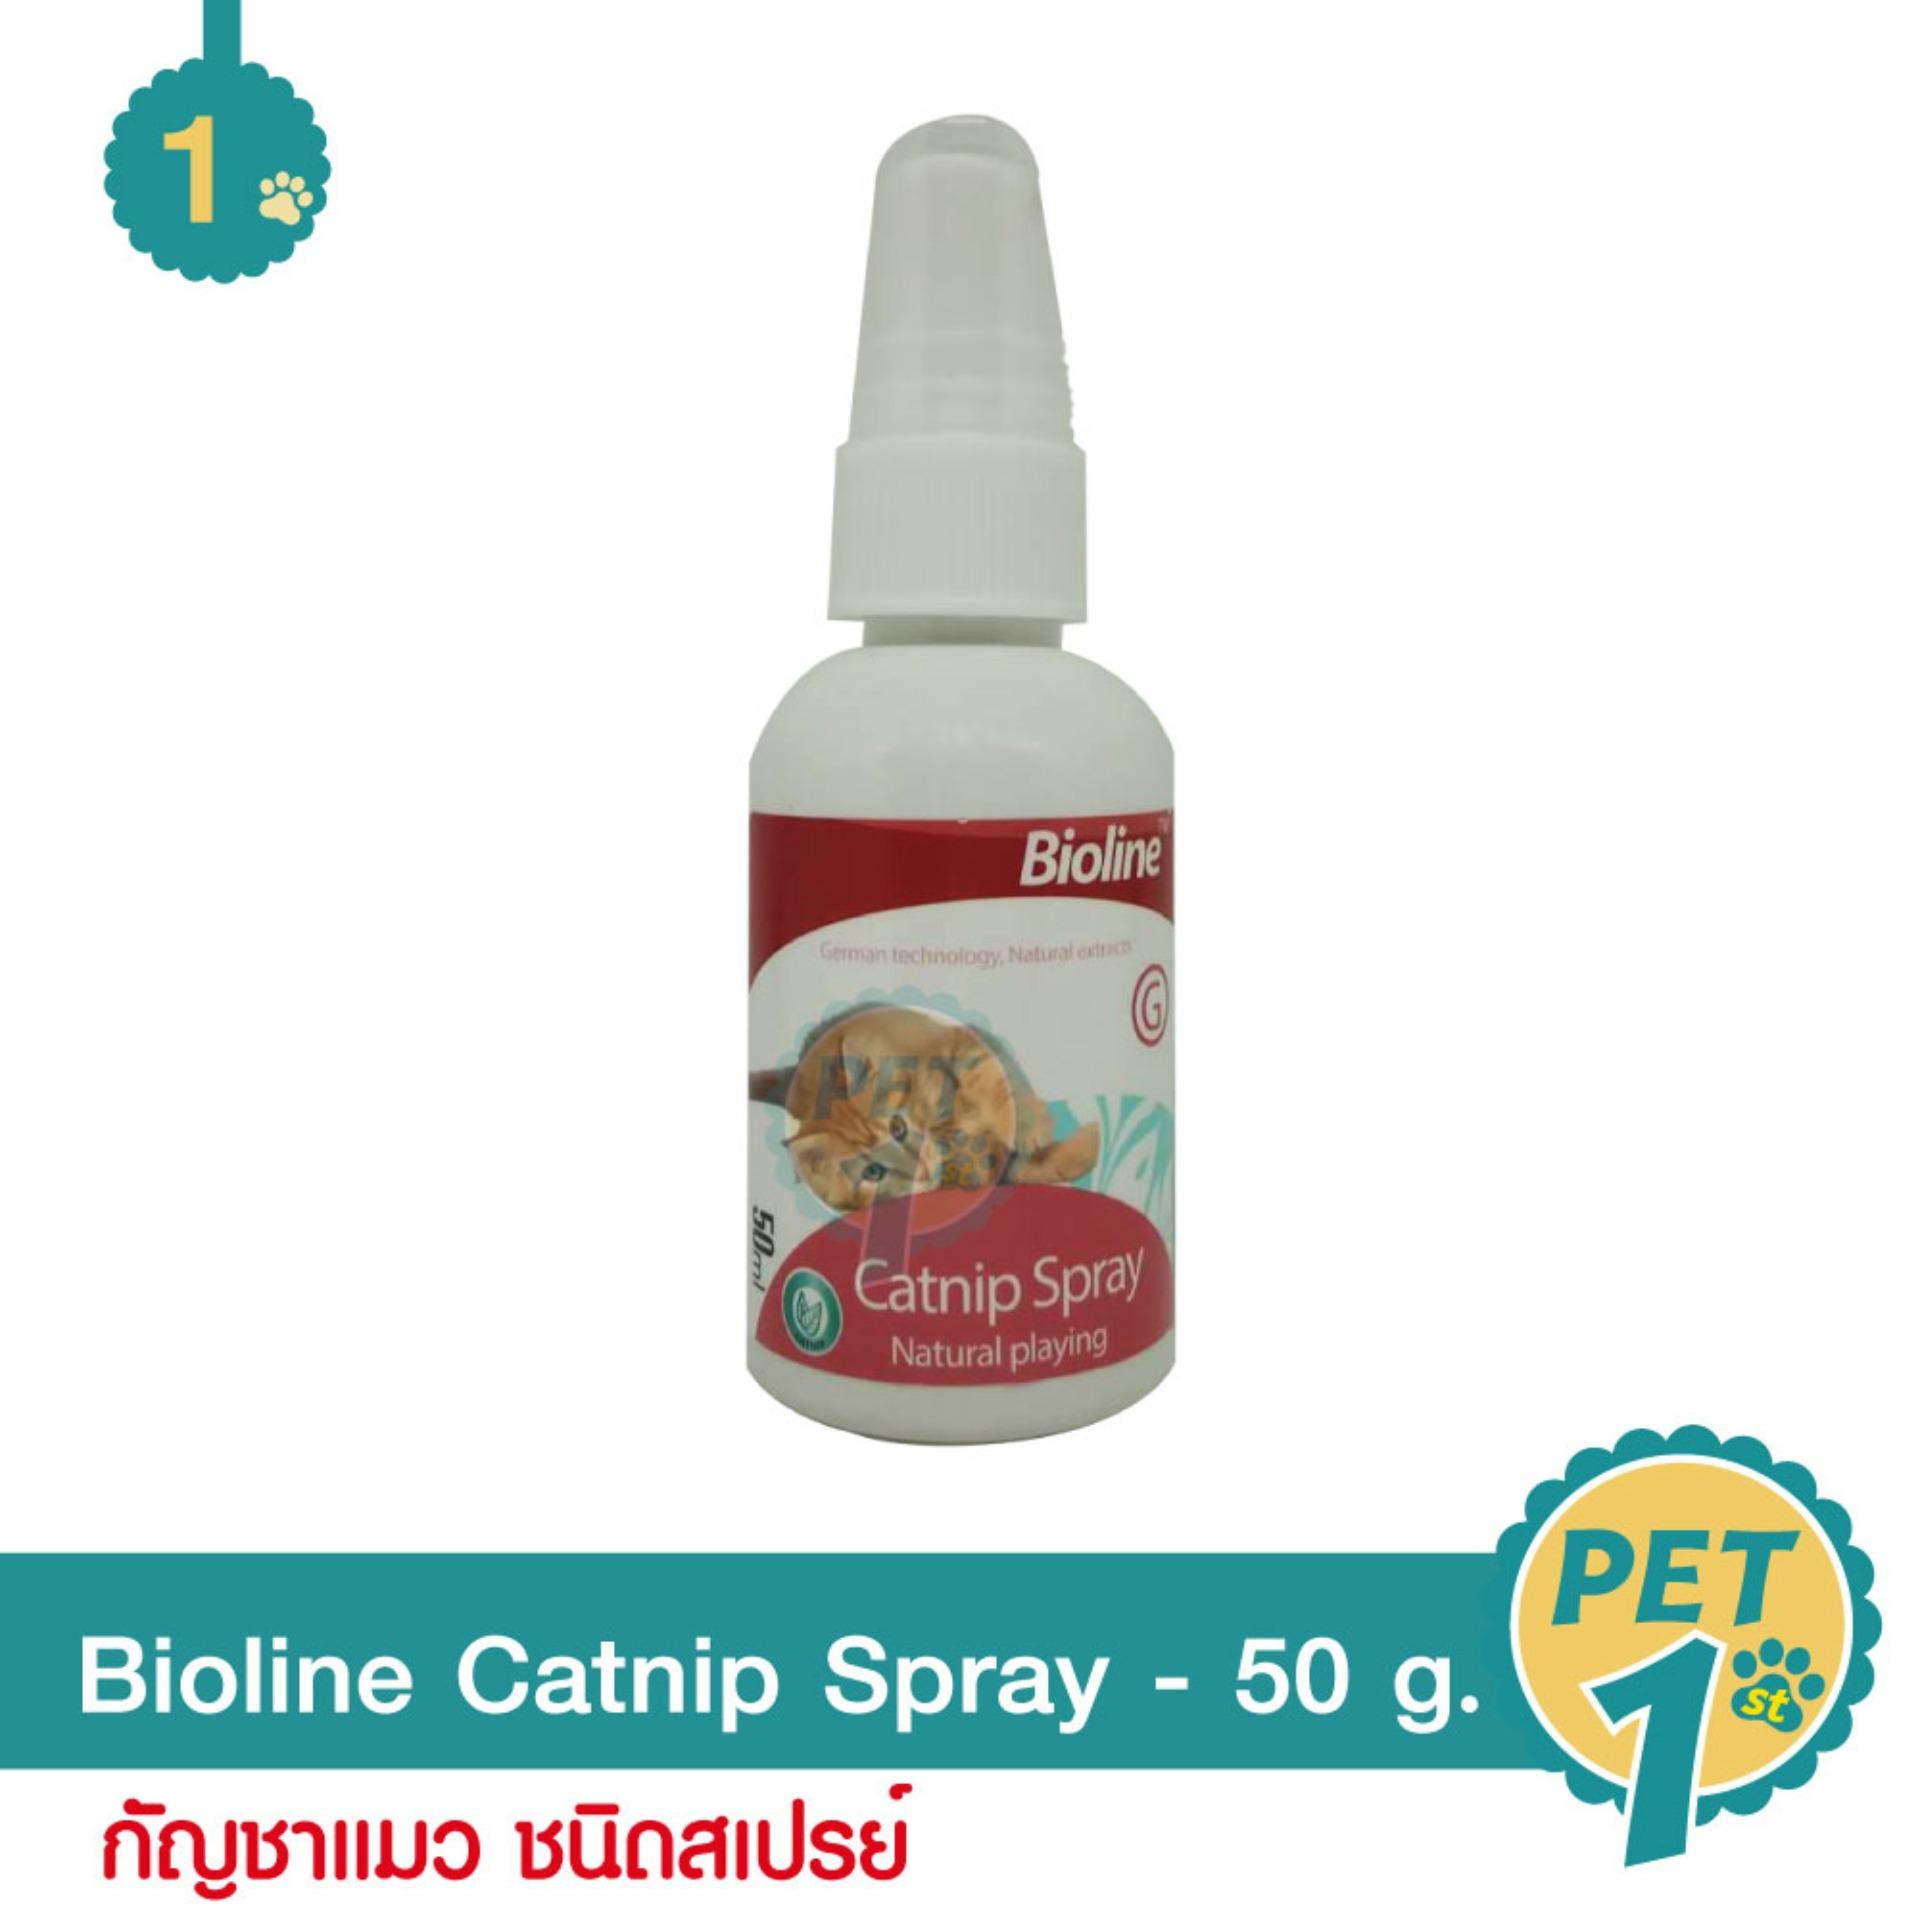 Bioline Catnip Spray กัญชาแมว ชนิดสเปรย์ สำหรับแมวทุกสายพันธุ์ 50 ml.